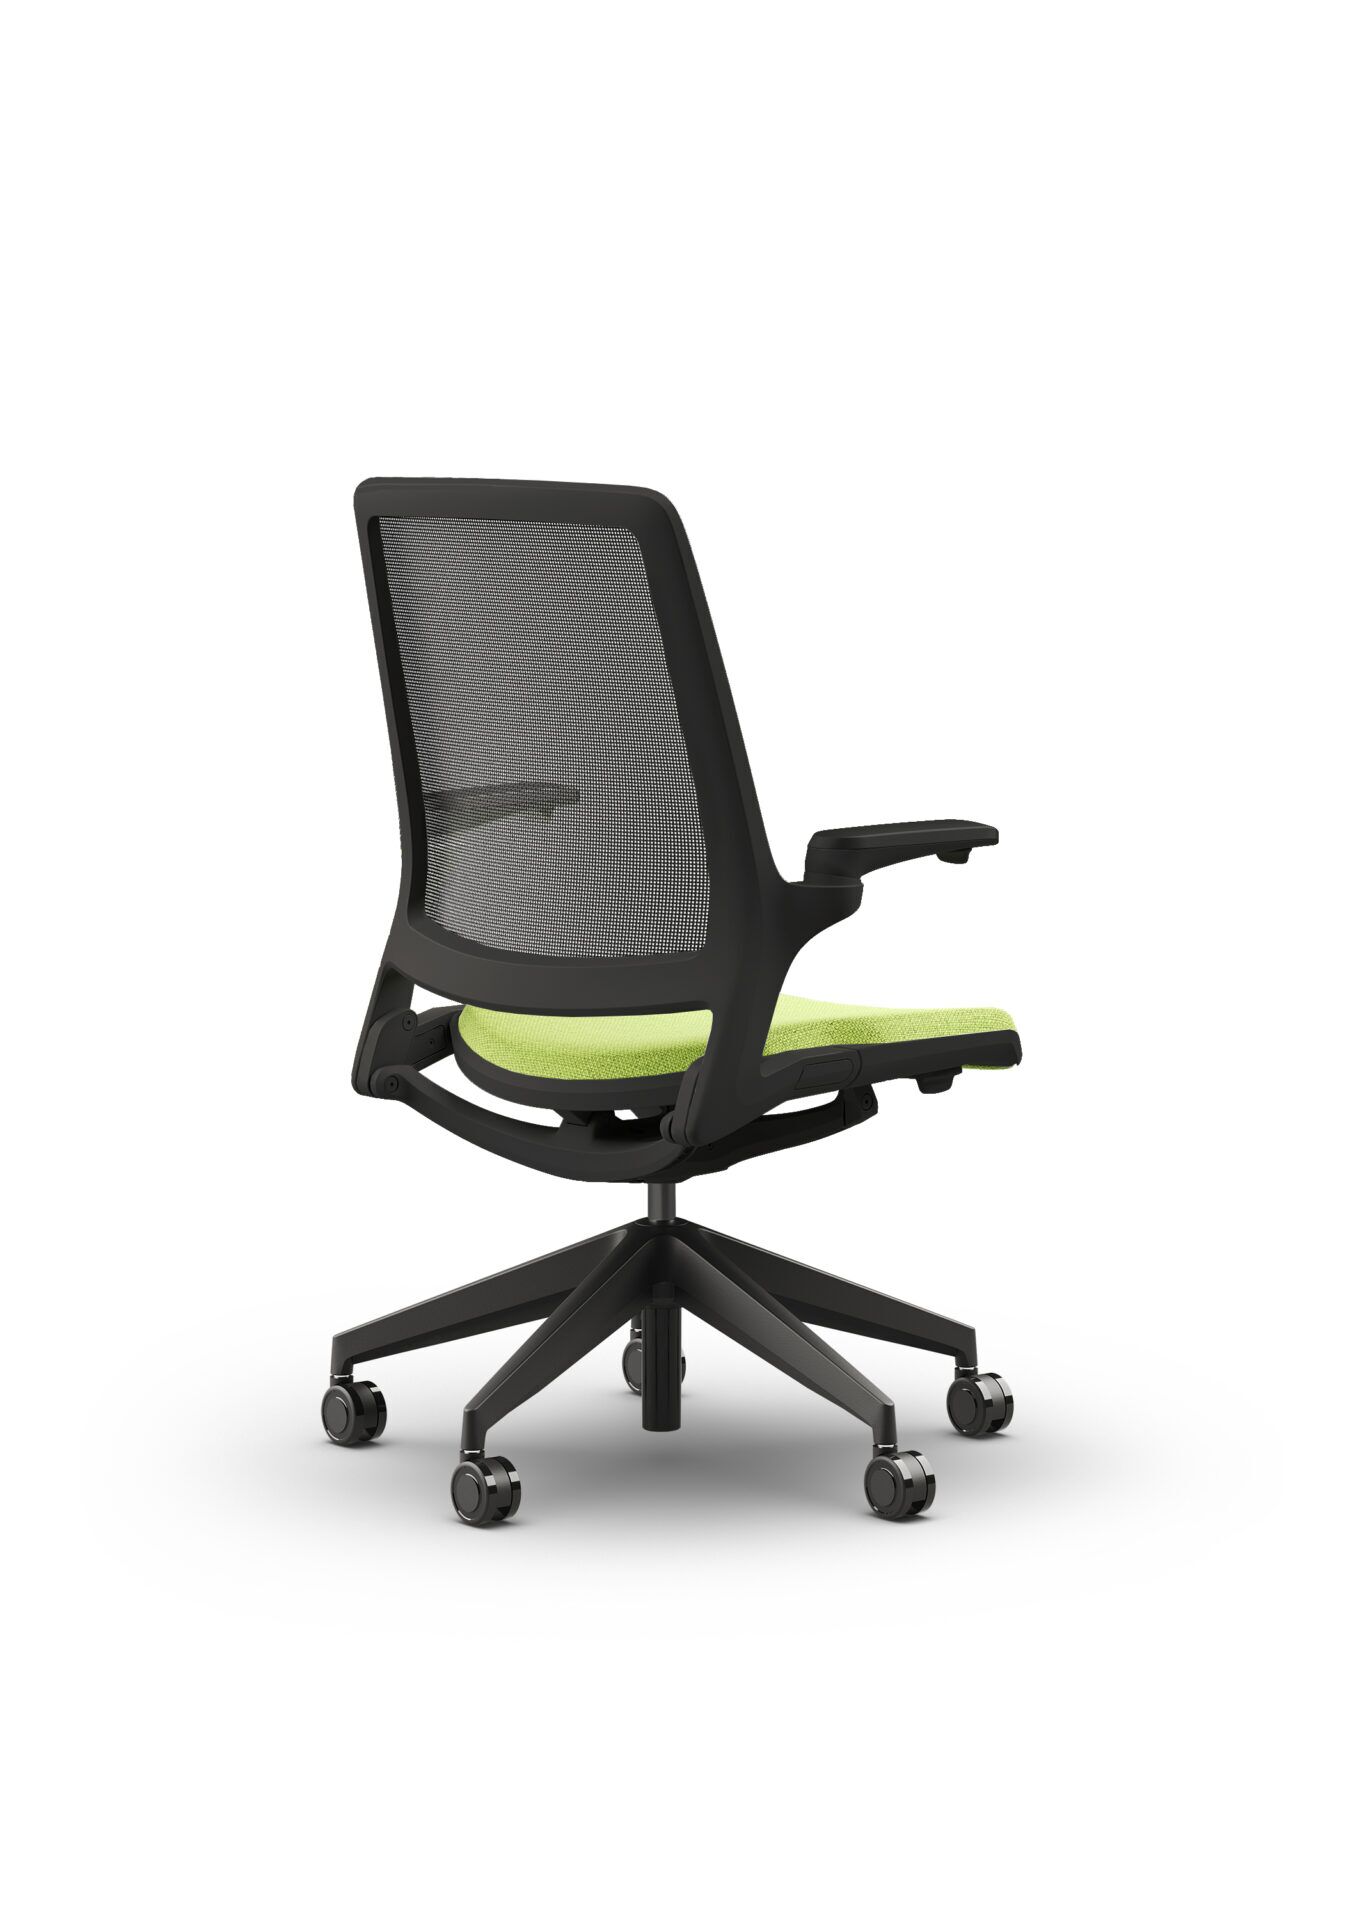 Czarny fotel biurowy z zielonym siedzeniem Ob smart - widoczny po skosie od tyłu zdjęcie 2